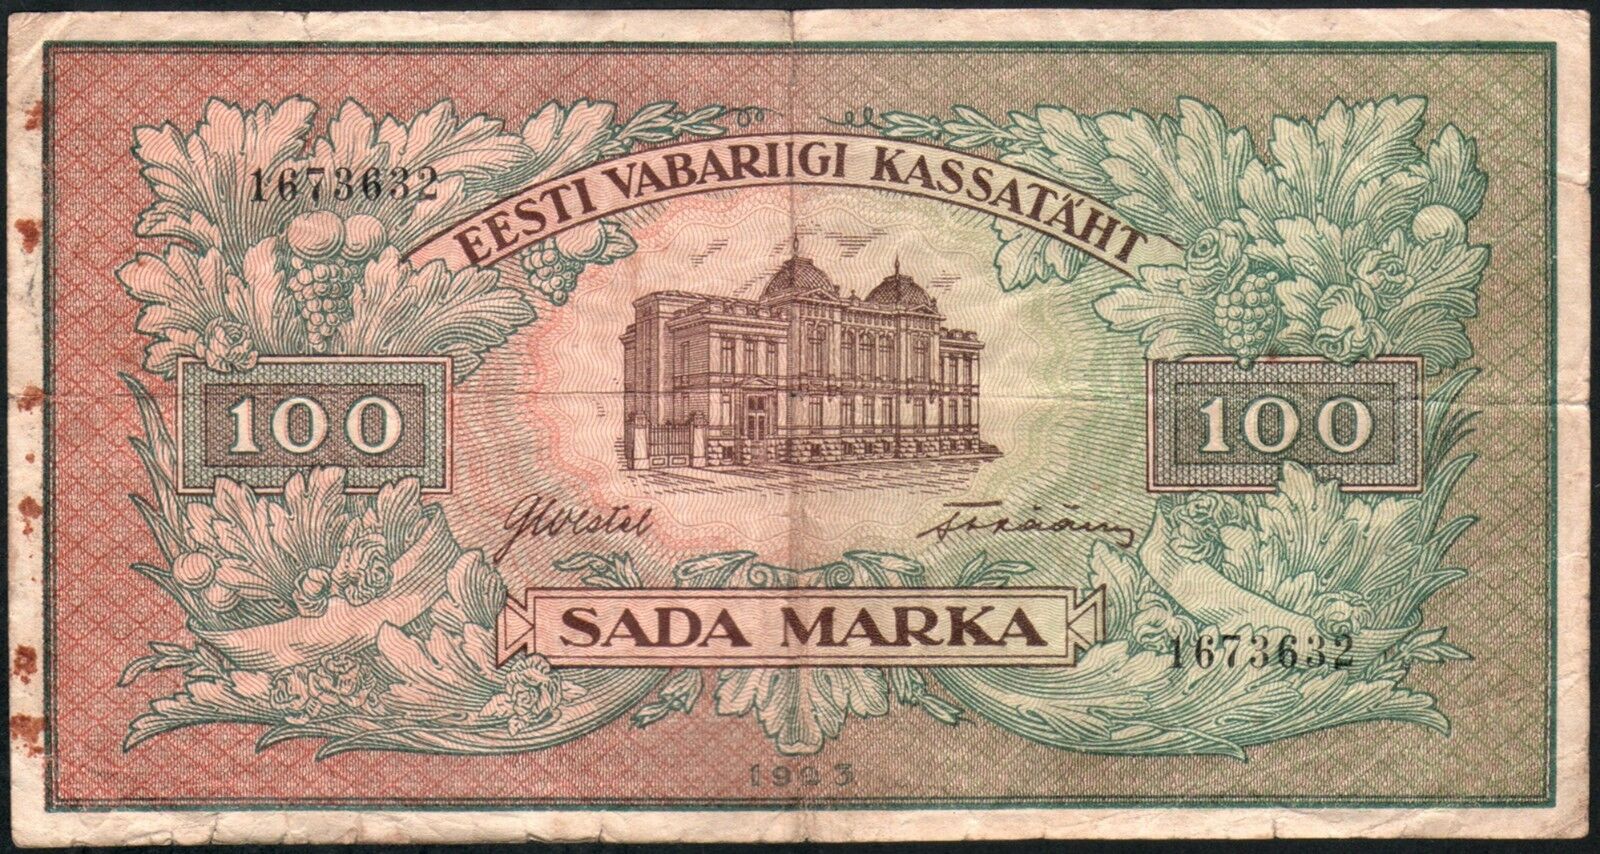 100 MARKA 1923 - Estonia, Series: 1673632 - 